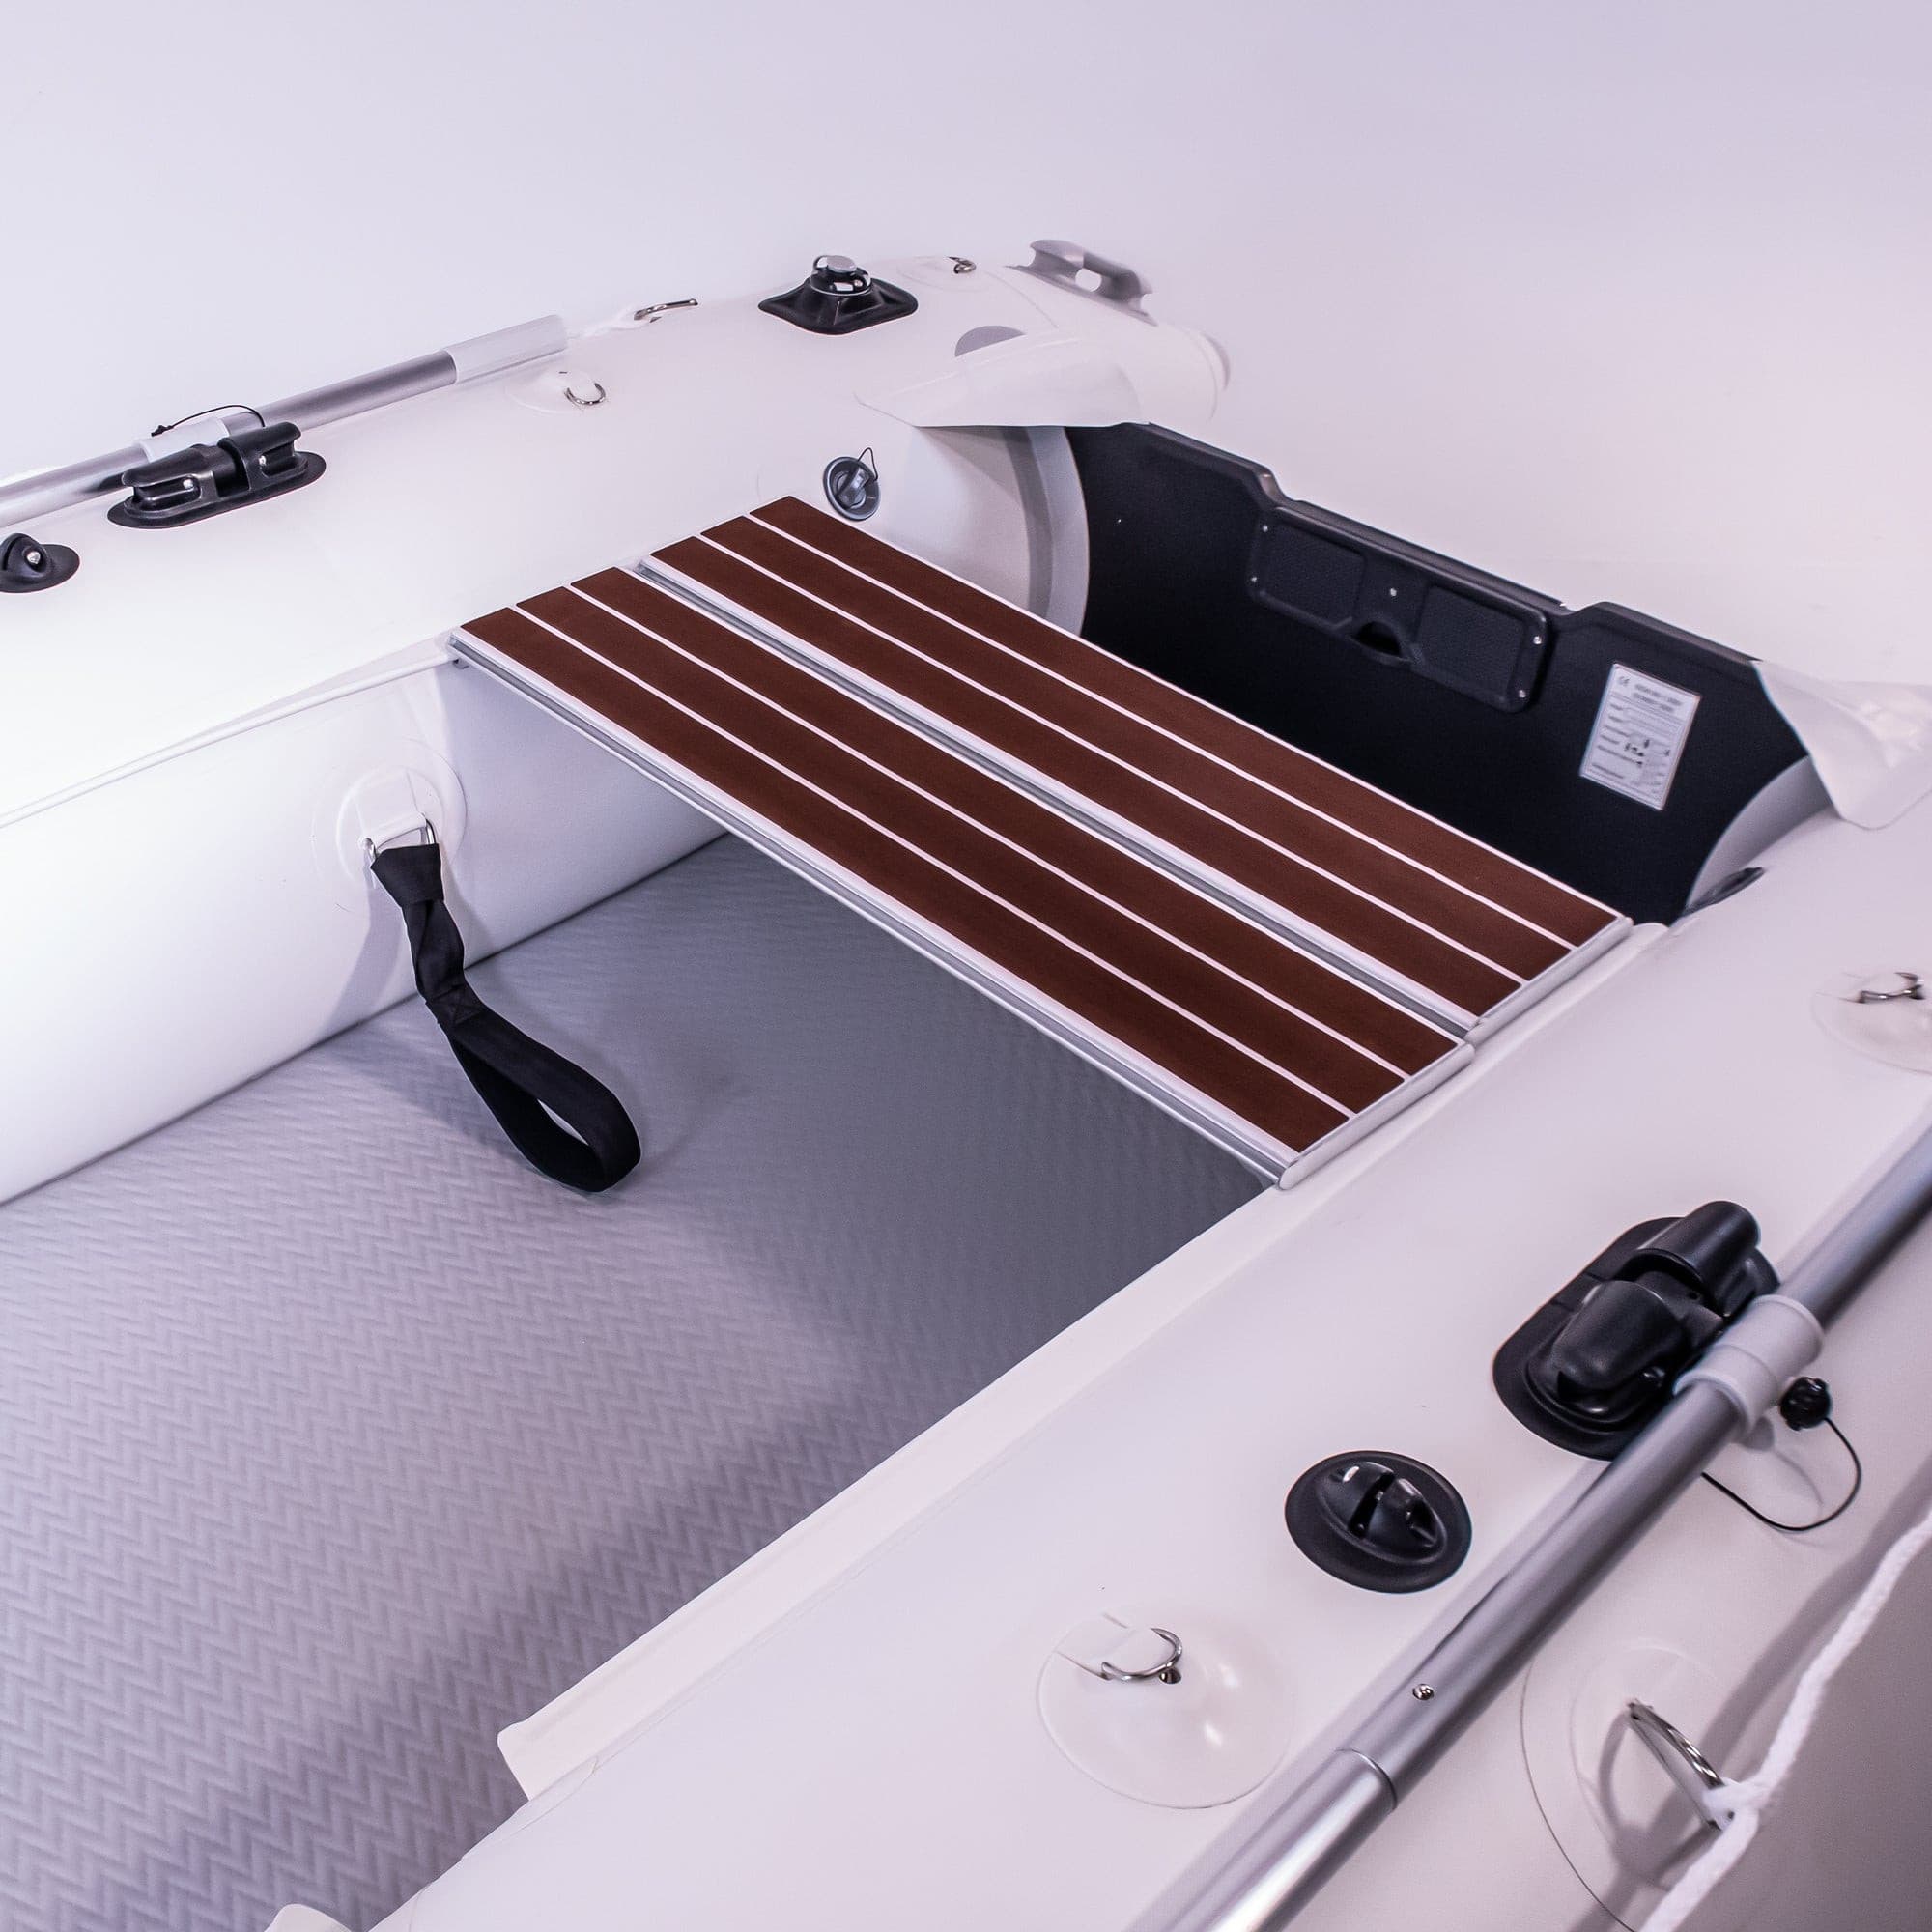 Further Customs Inflatable Catamaran Kit Adjustable Bench Seats